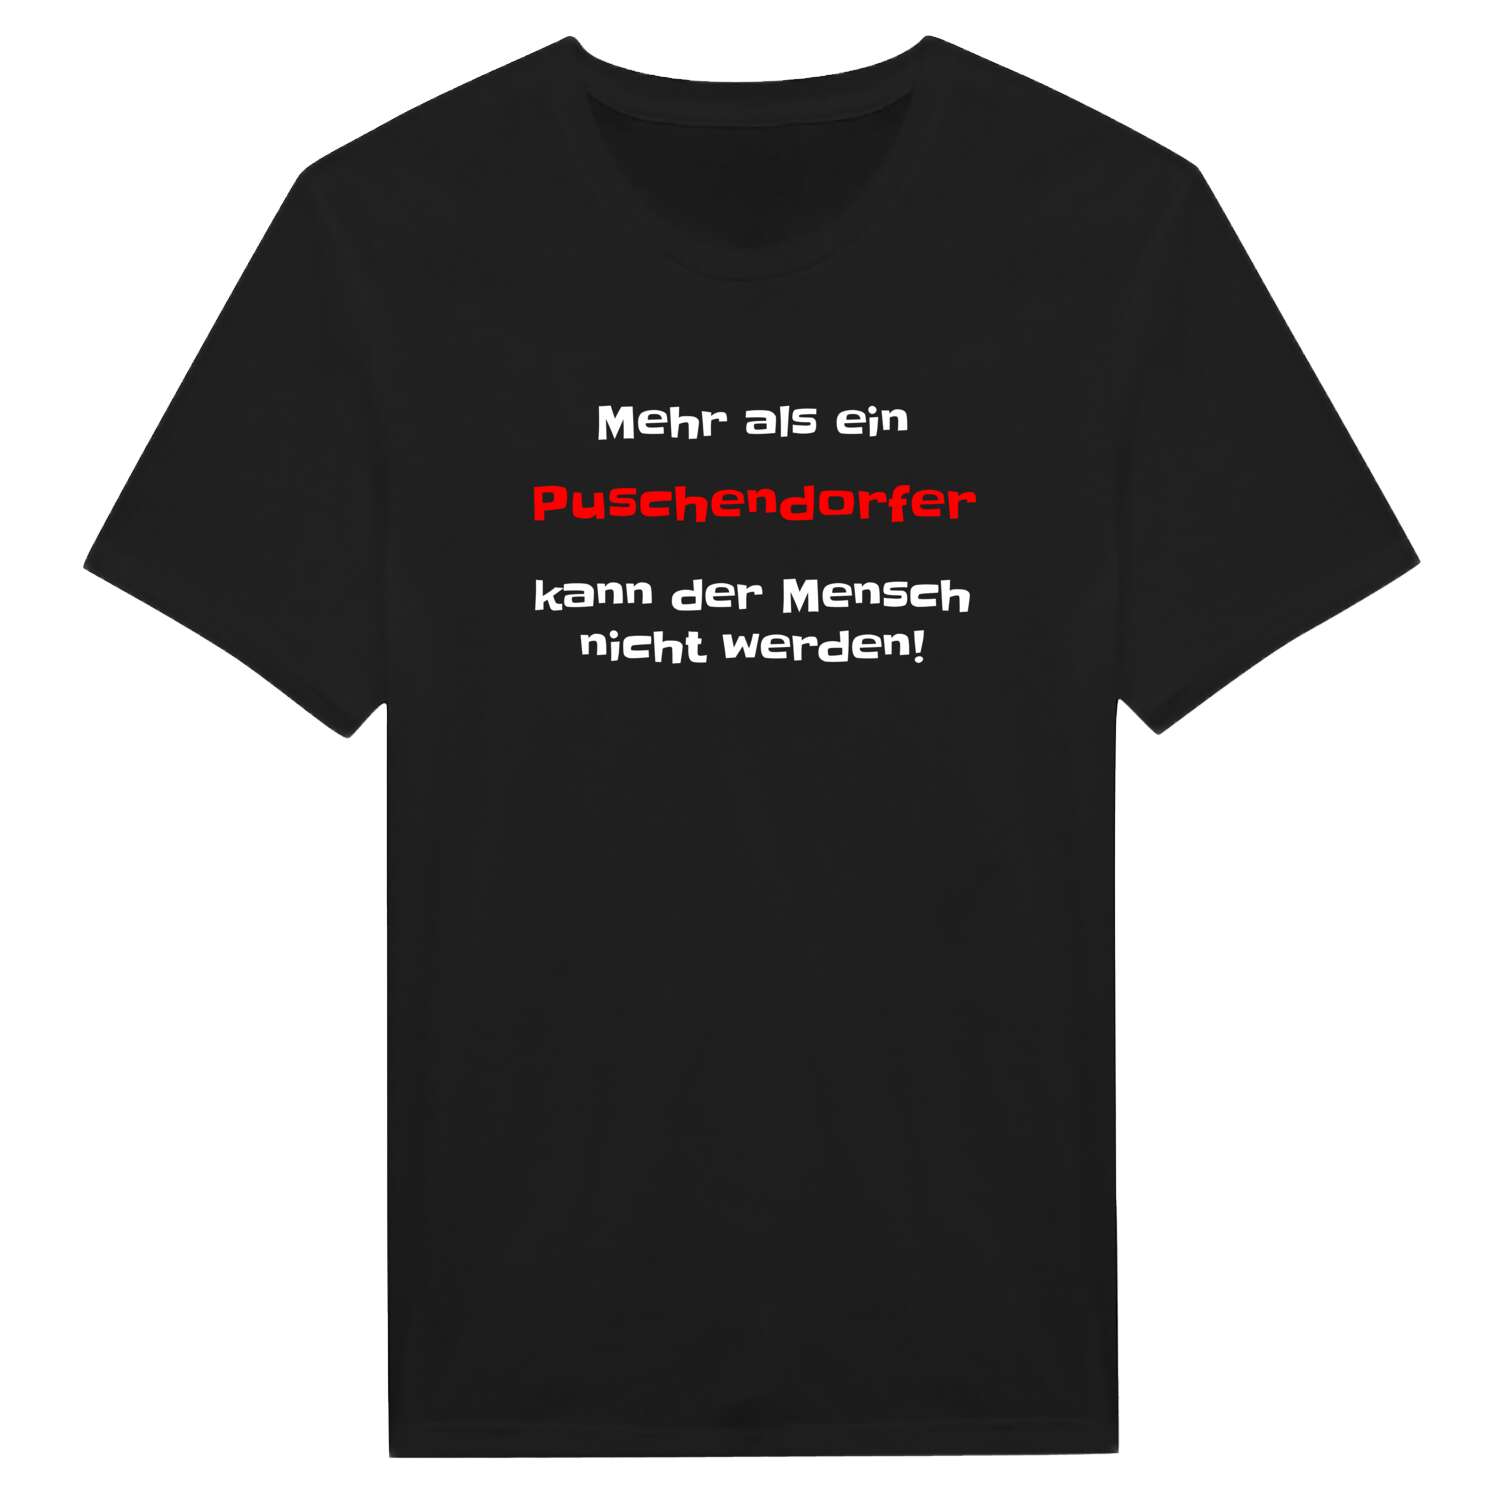 Puschendorf T-Shirt »Mehr als ein«